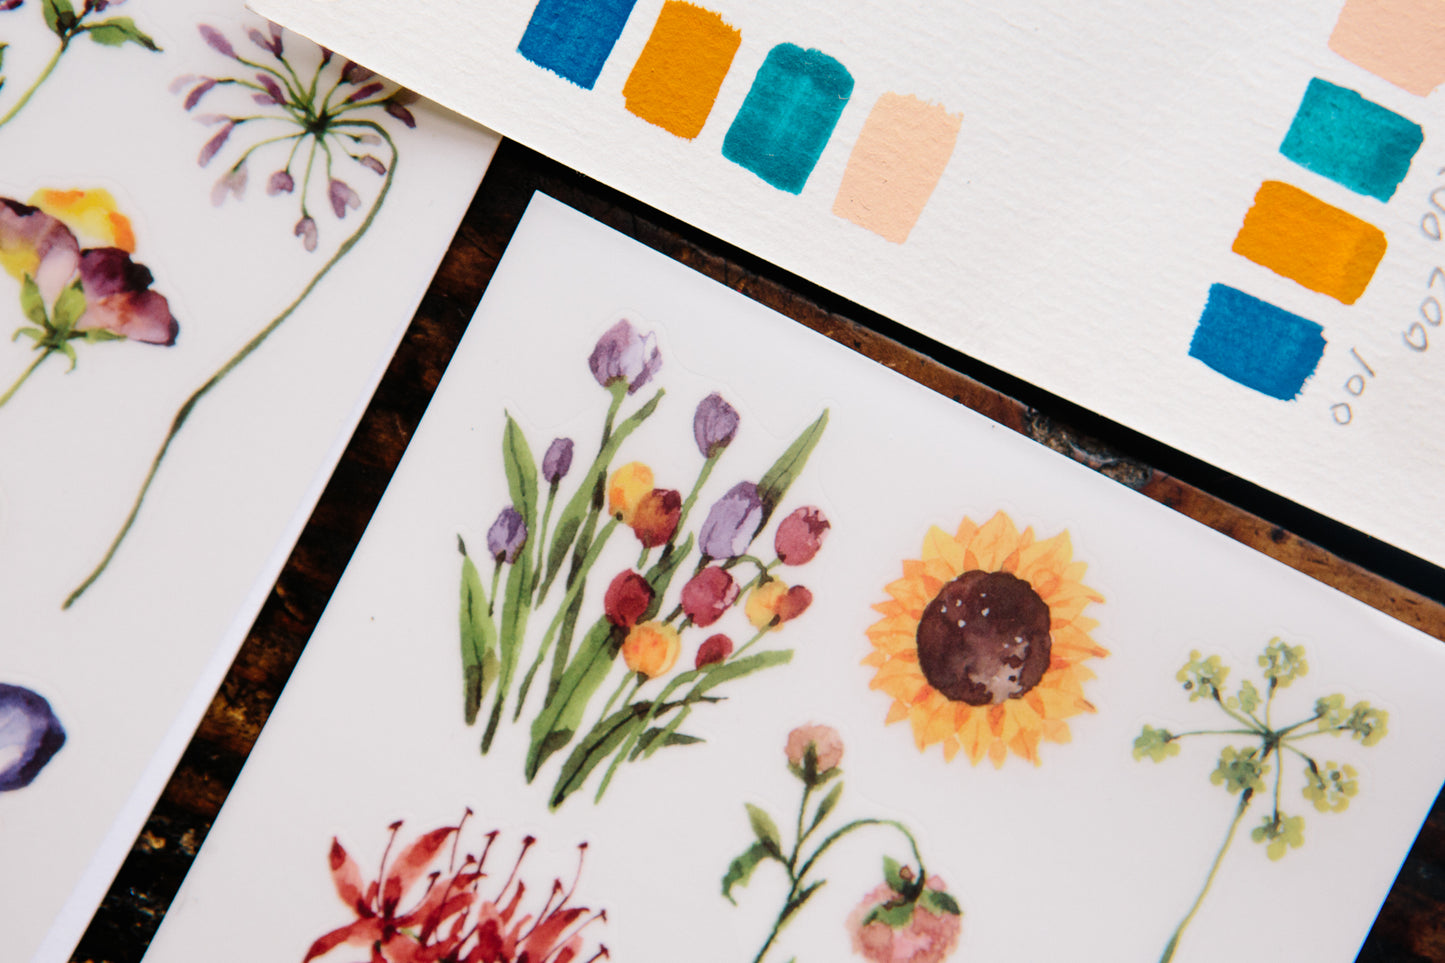 OURS Les Fleurs Print-on Sticker Set, 3 designs